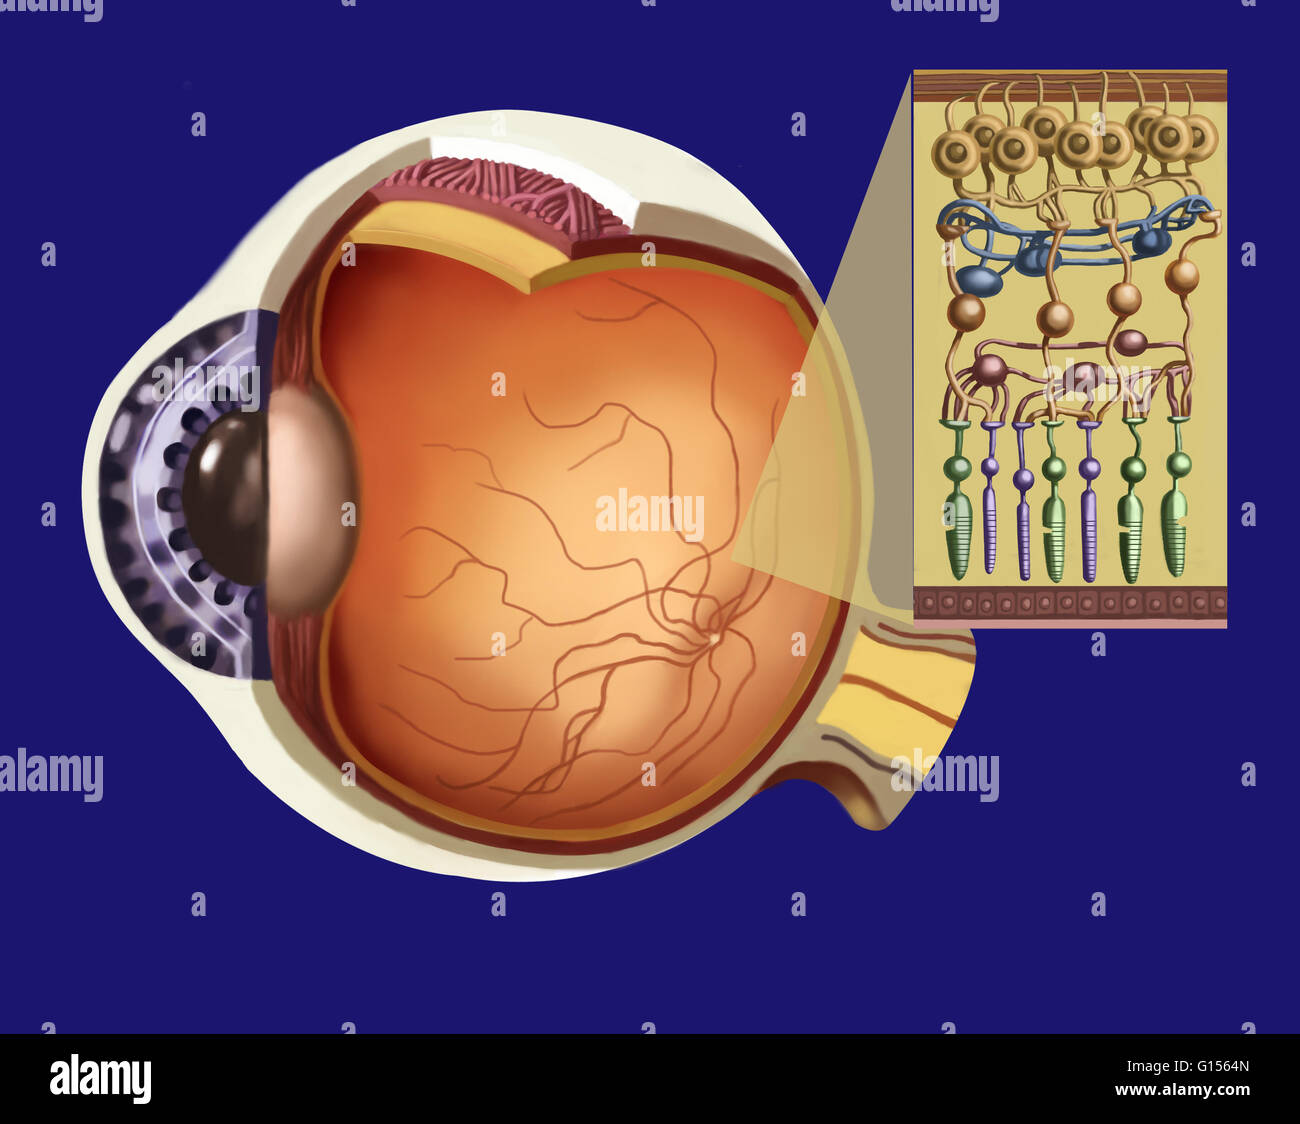 Illustrazione che mostra la struttura della retina come un inserto per l' occhio più grande struttura. Da cima a fondo: nervo ottico a fibra (marrone  rossiccio e striscia in alto), cellule gangliari (in